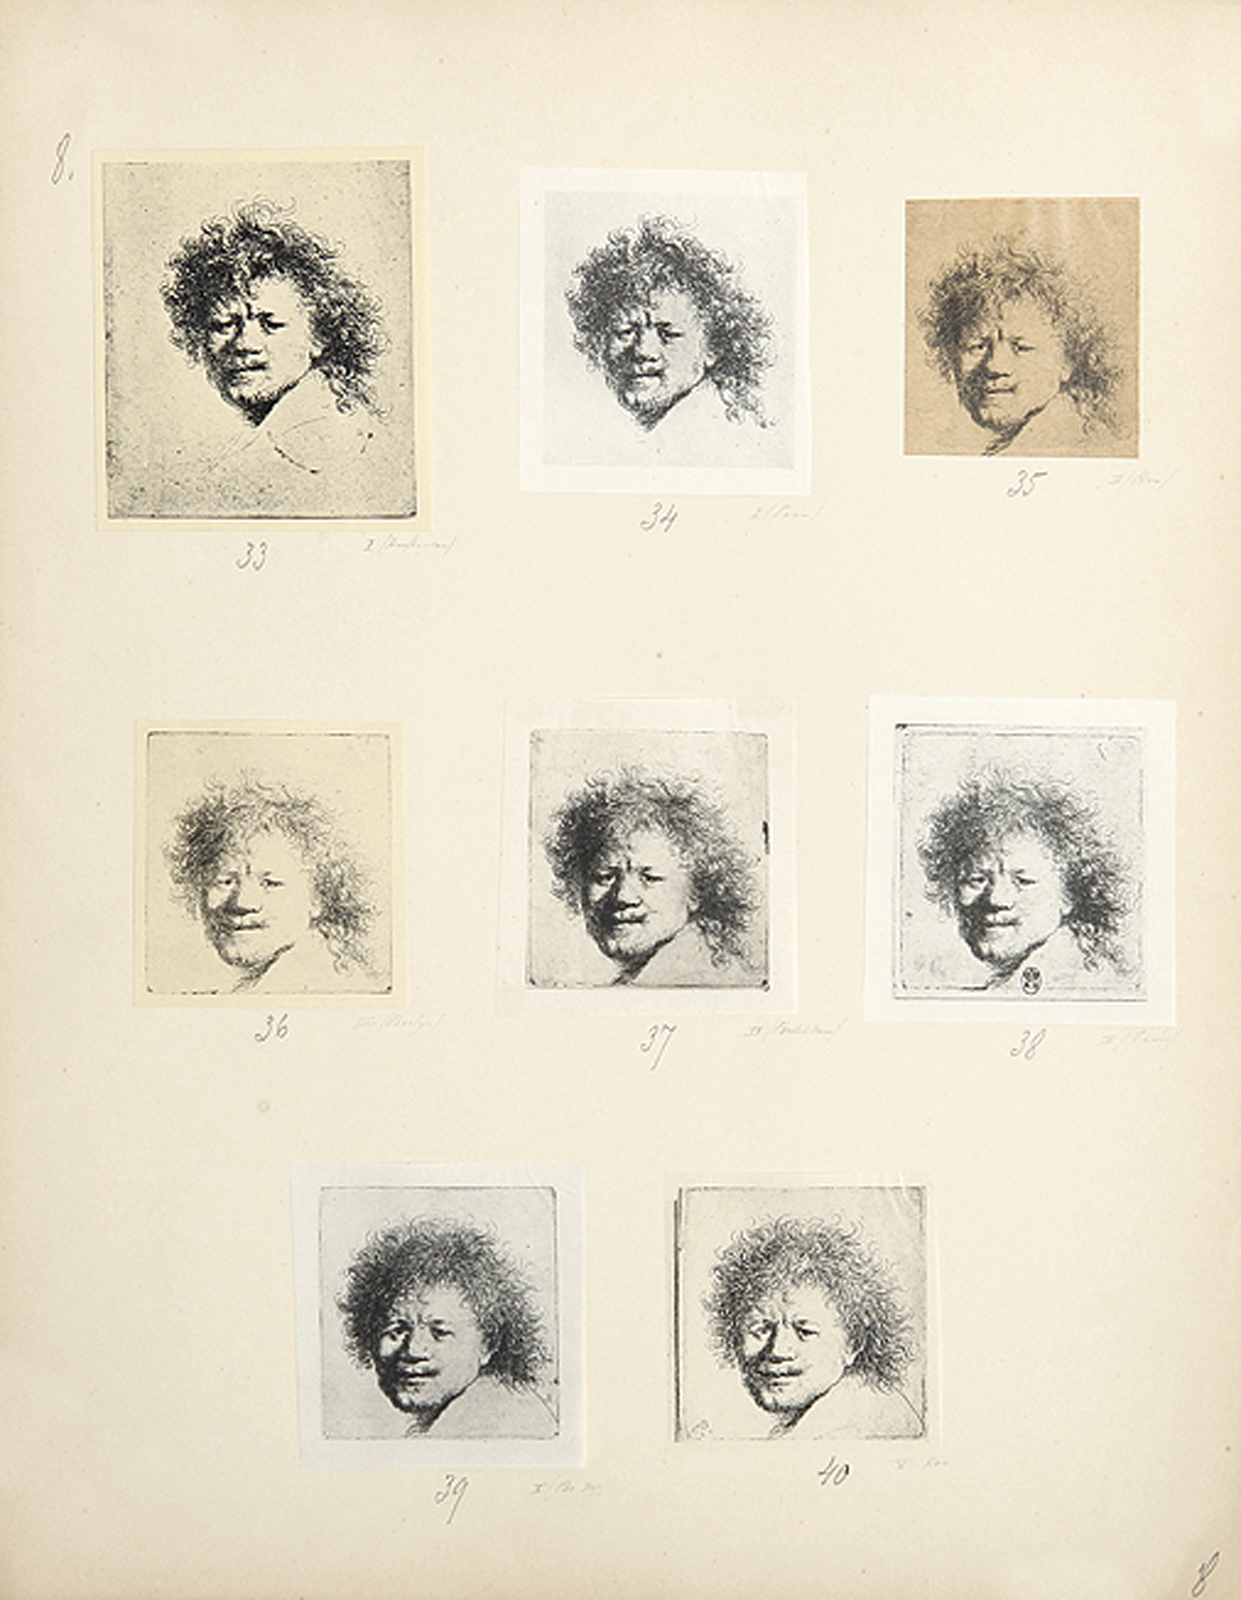 Rovinski, Dmitri; L"Oeuvre gravé de Rembrandt.